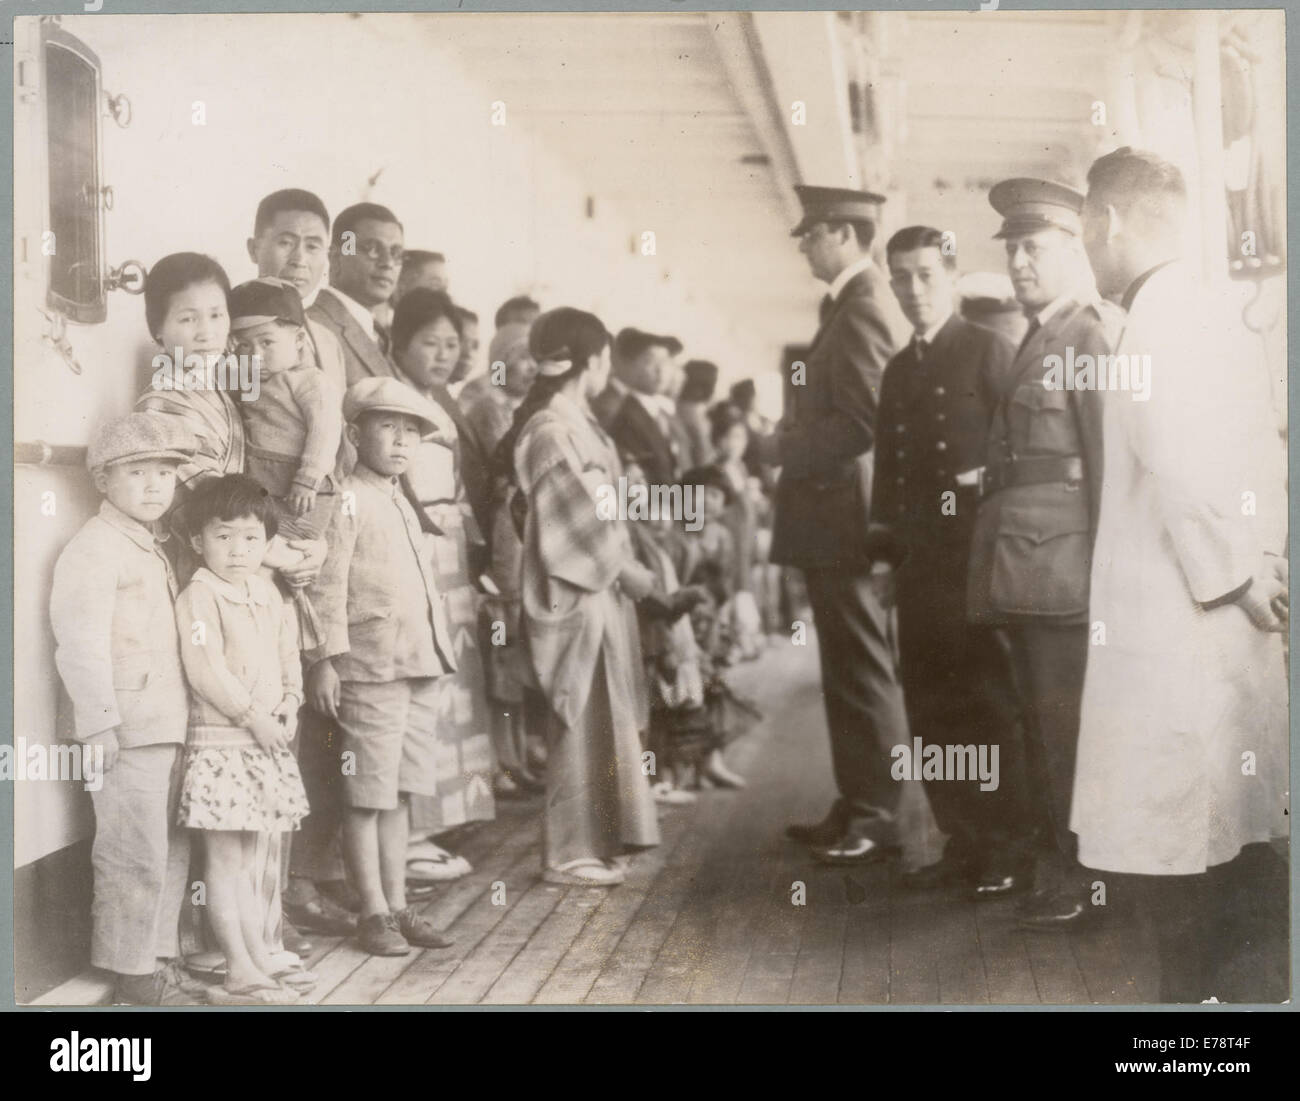 : Prüfen Passagiere an Bord Schiffe, Schiff ist die Shimyo Maru, Angel Island, Kalifornien, 1931 Stockfoto